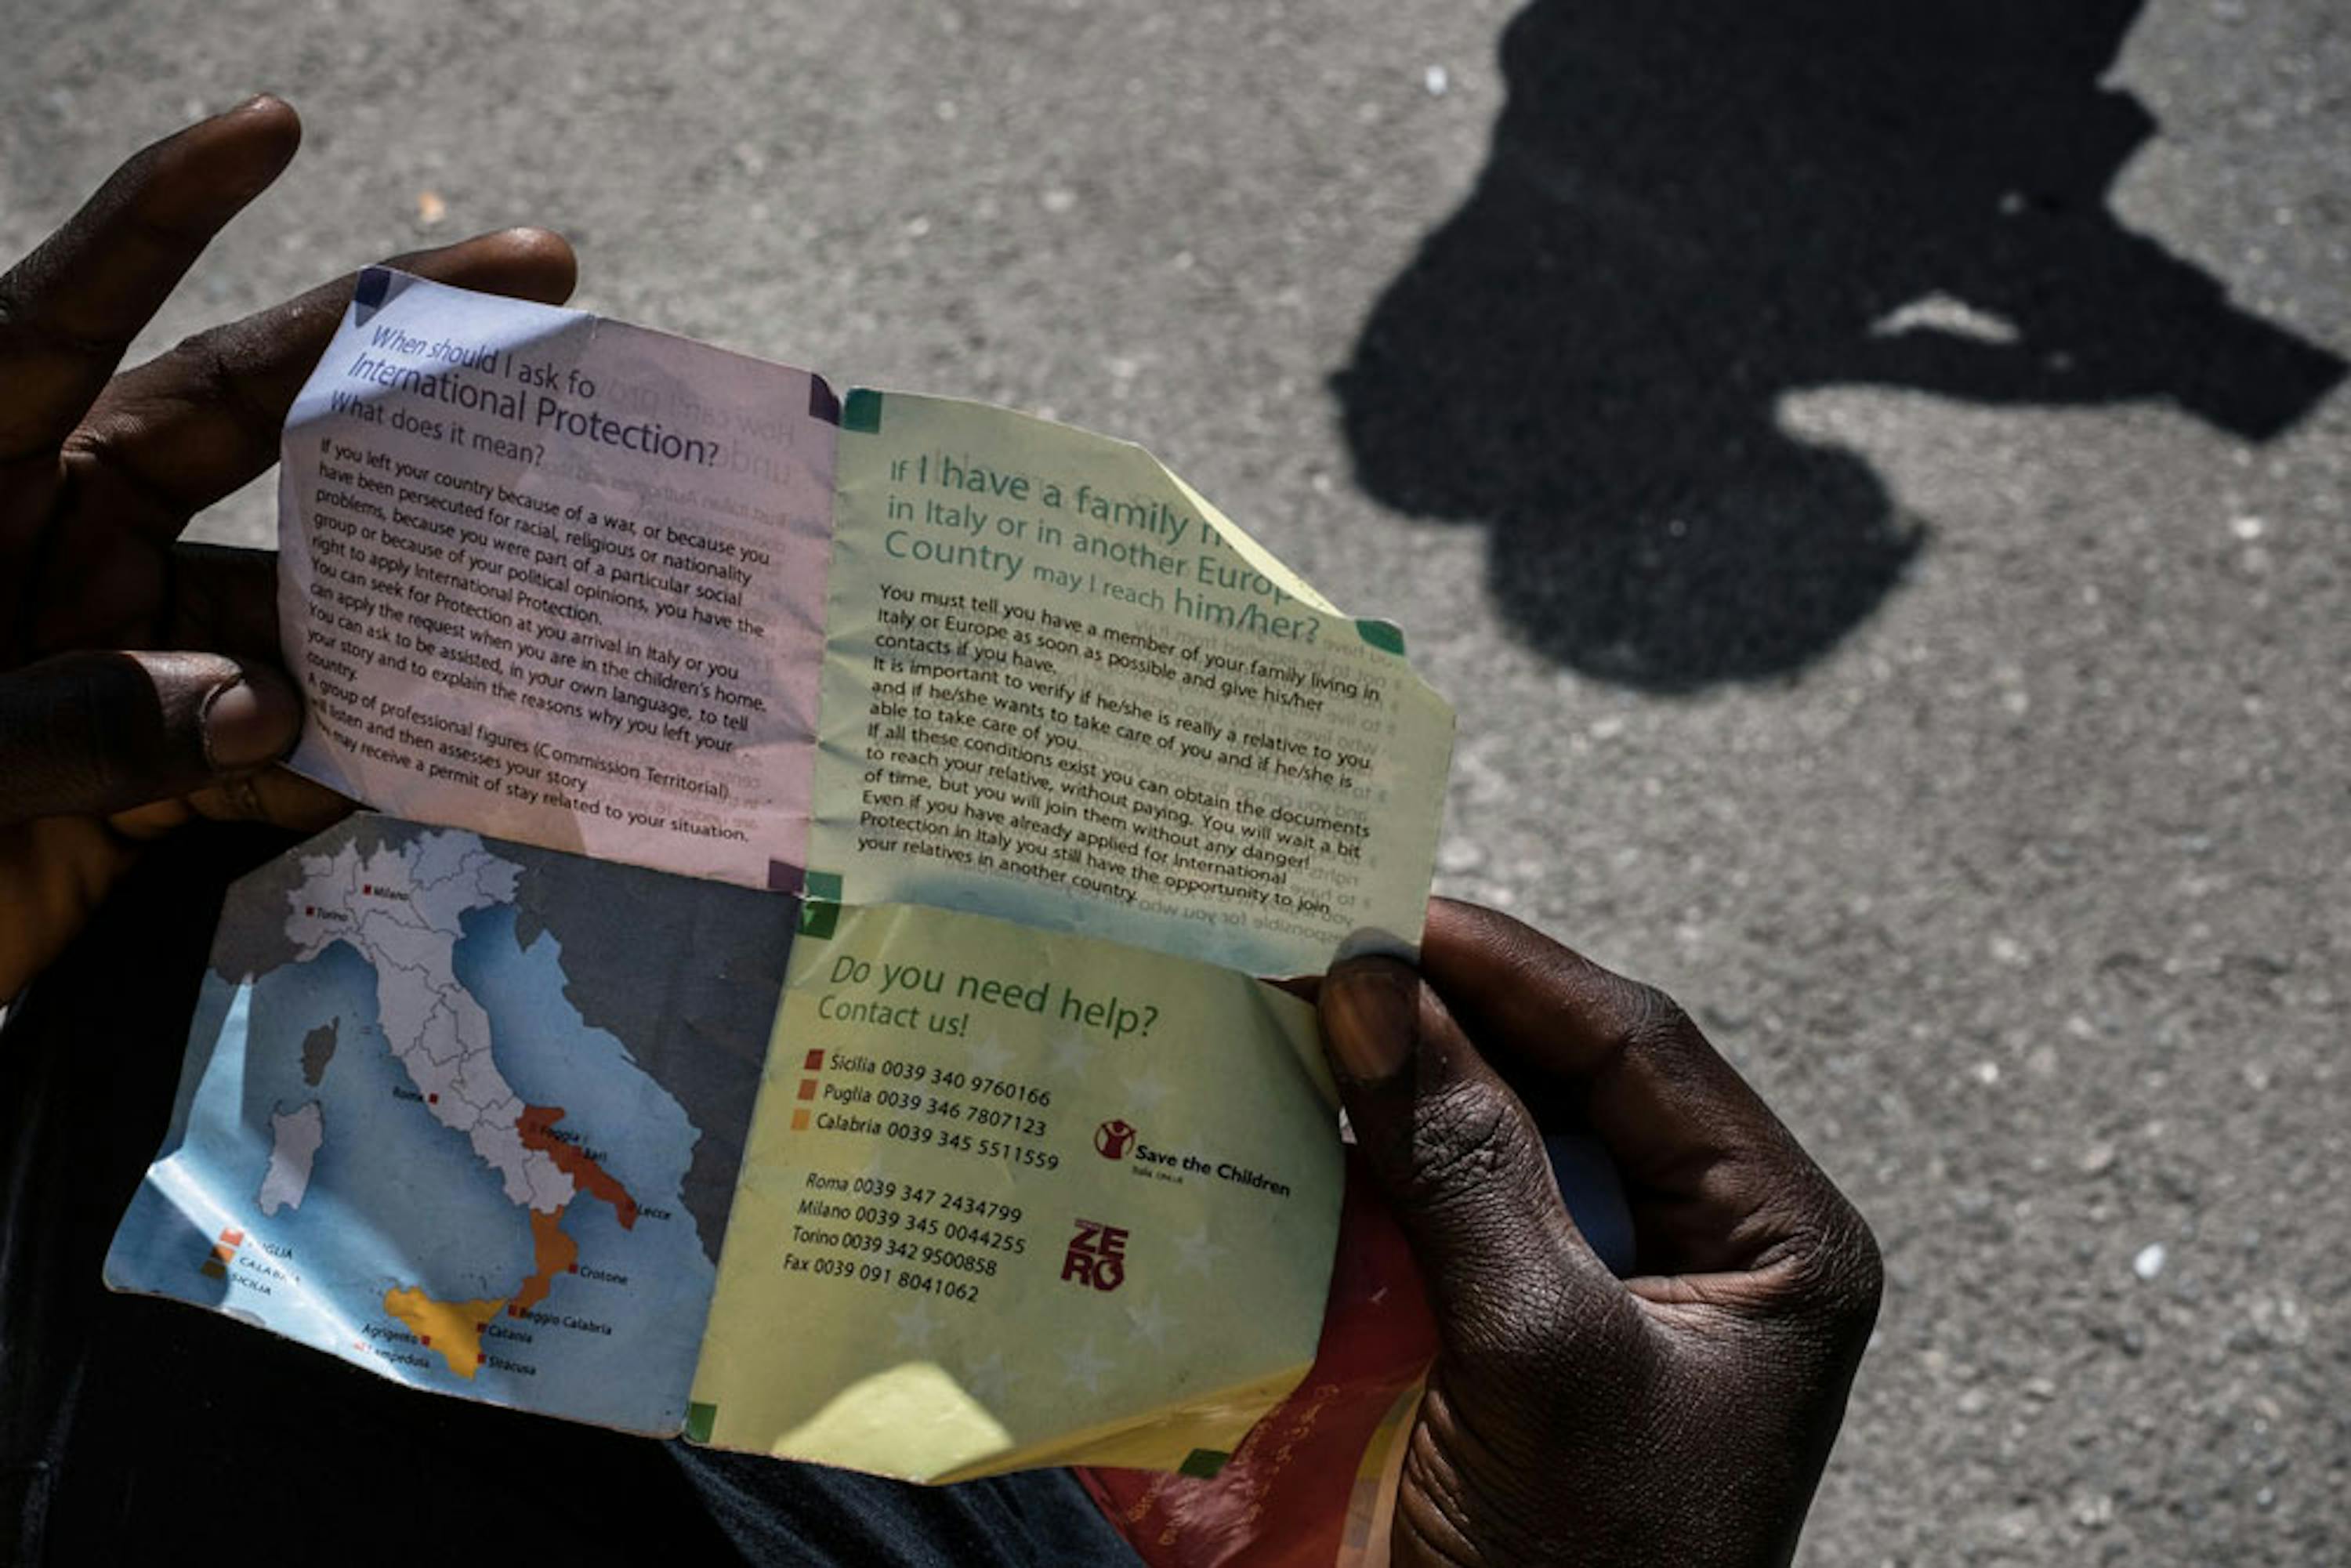 Un adolescente appena giunto nell'hotspot di Pozzallo (RG) legge un volantino con le informazioni sulle modalità per effettuare la richiesta di asilo - ©UNICEF/UN020013/Gilbertson